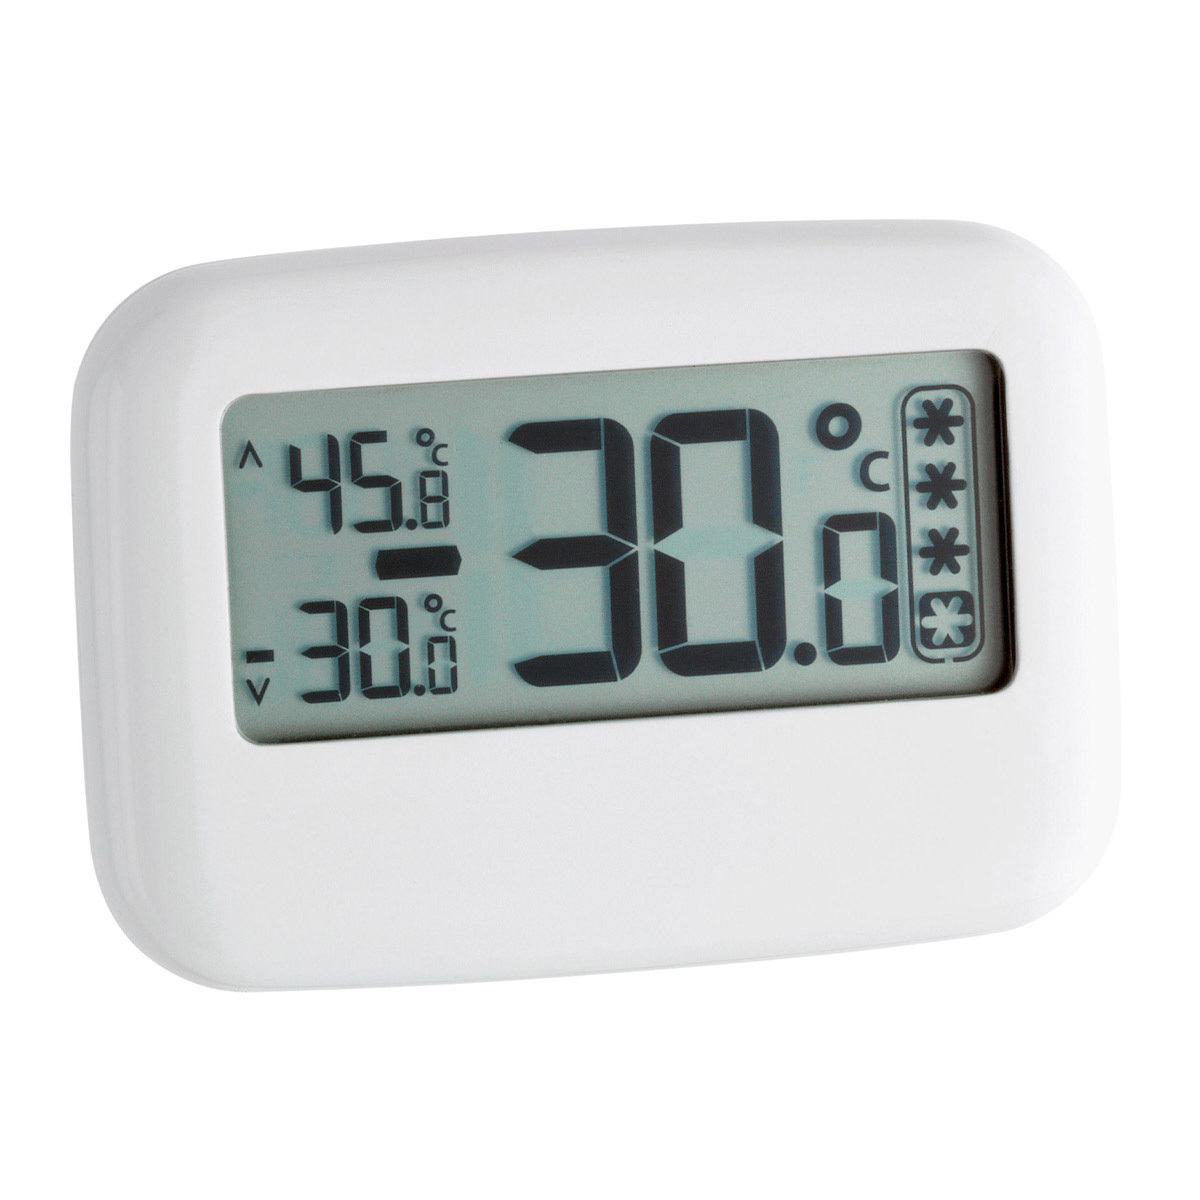 30-1042-digitales-kühl-gefrierschrank-thermometer-ansicht-1200x1200px.jpg